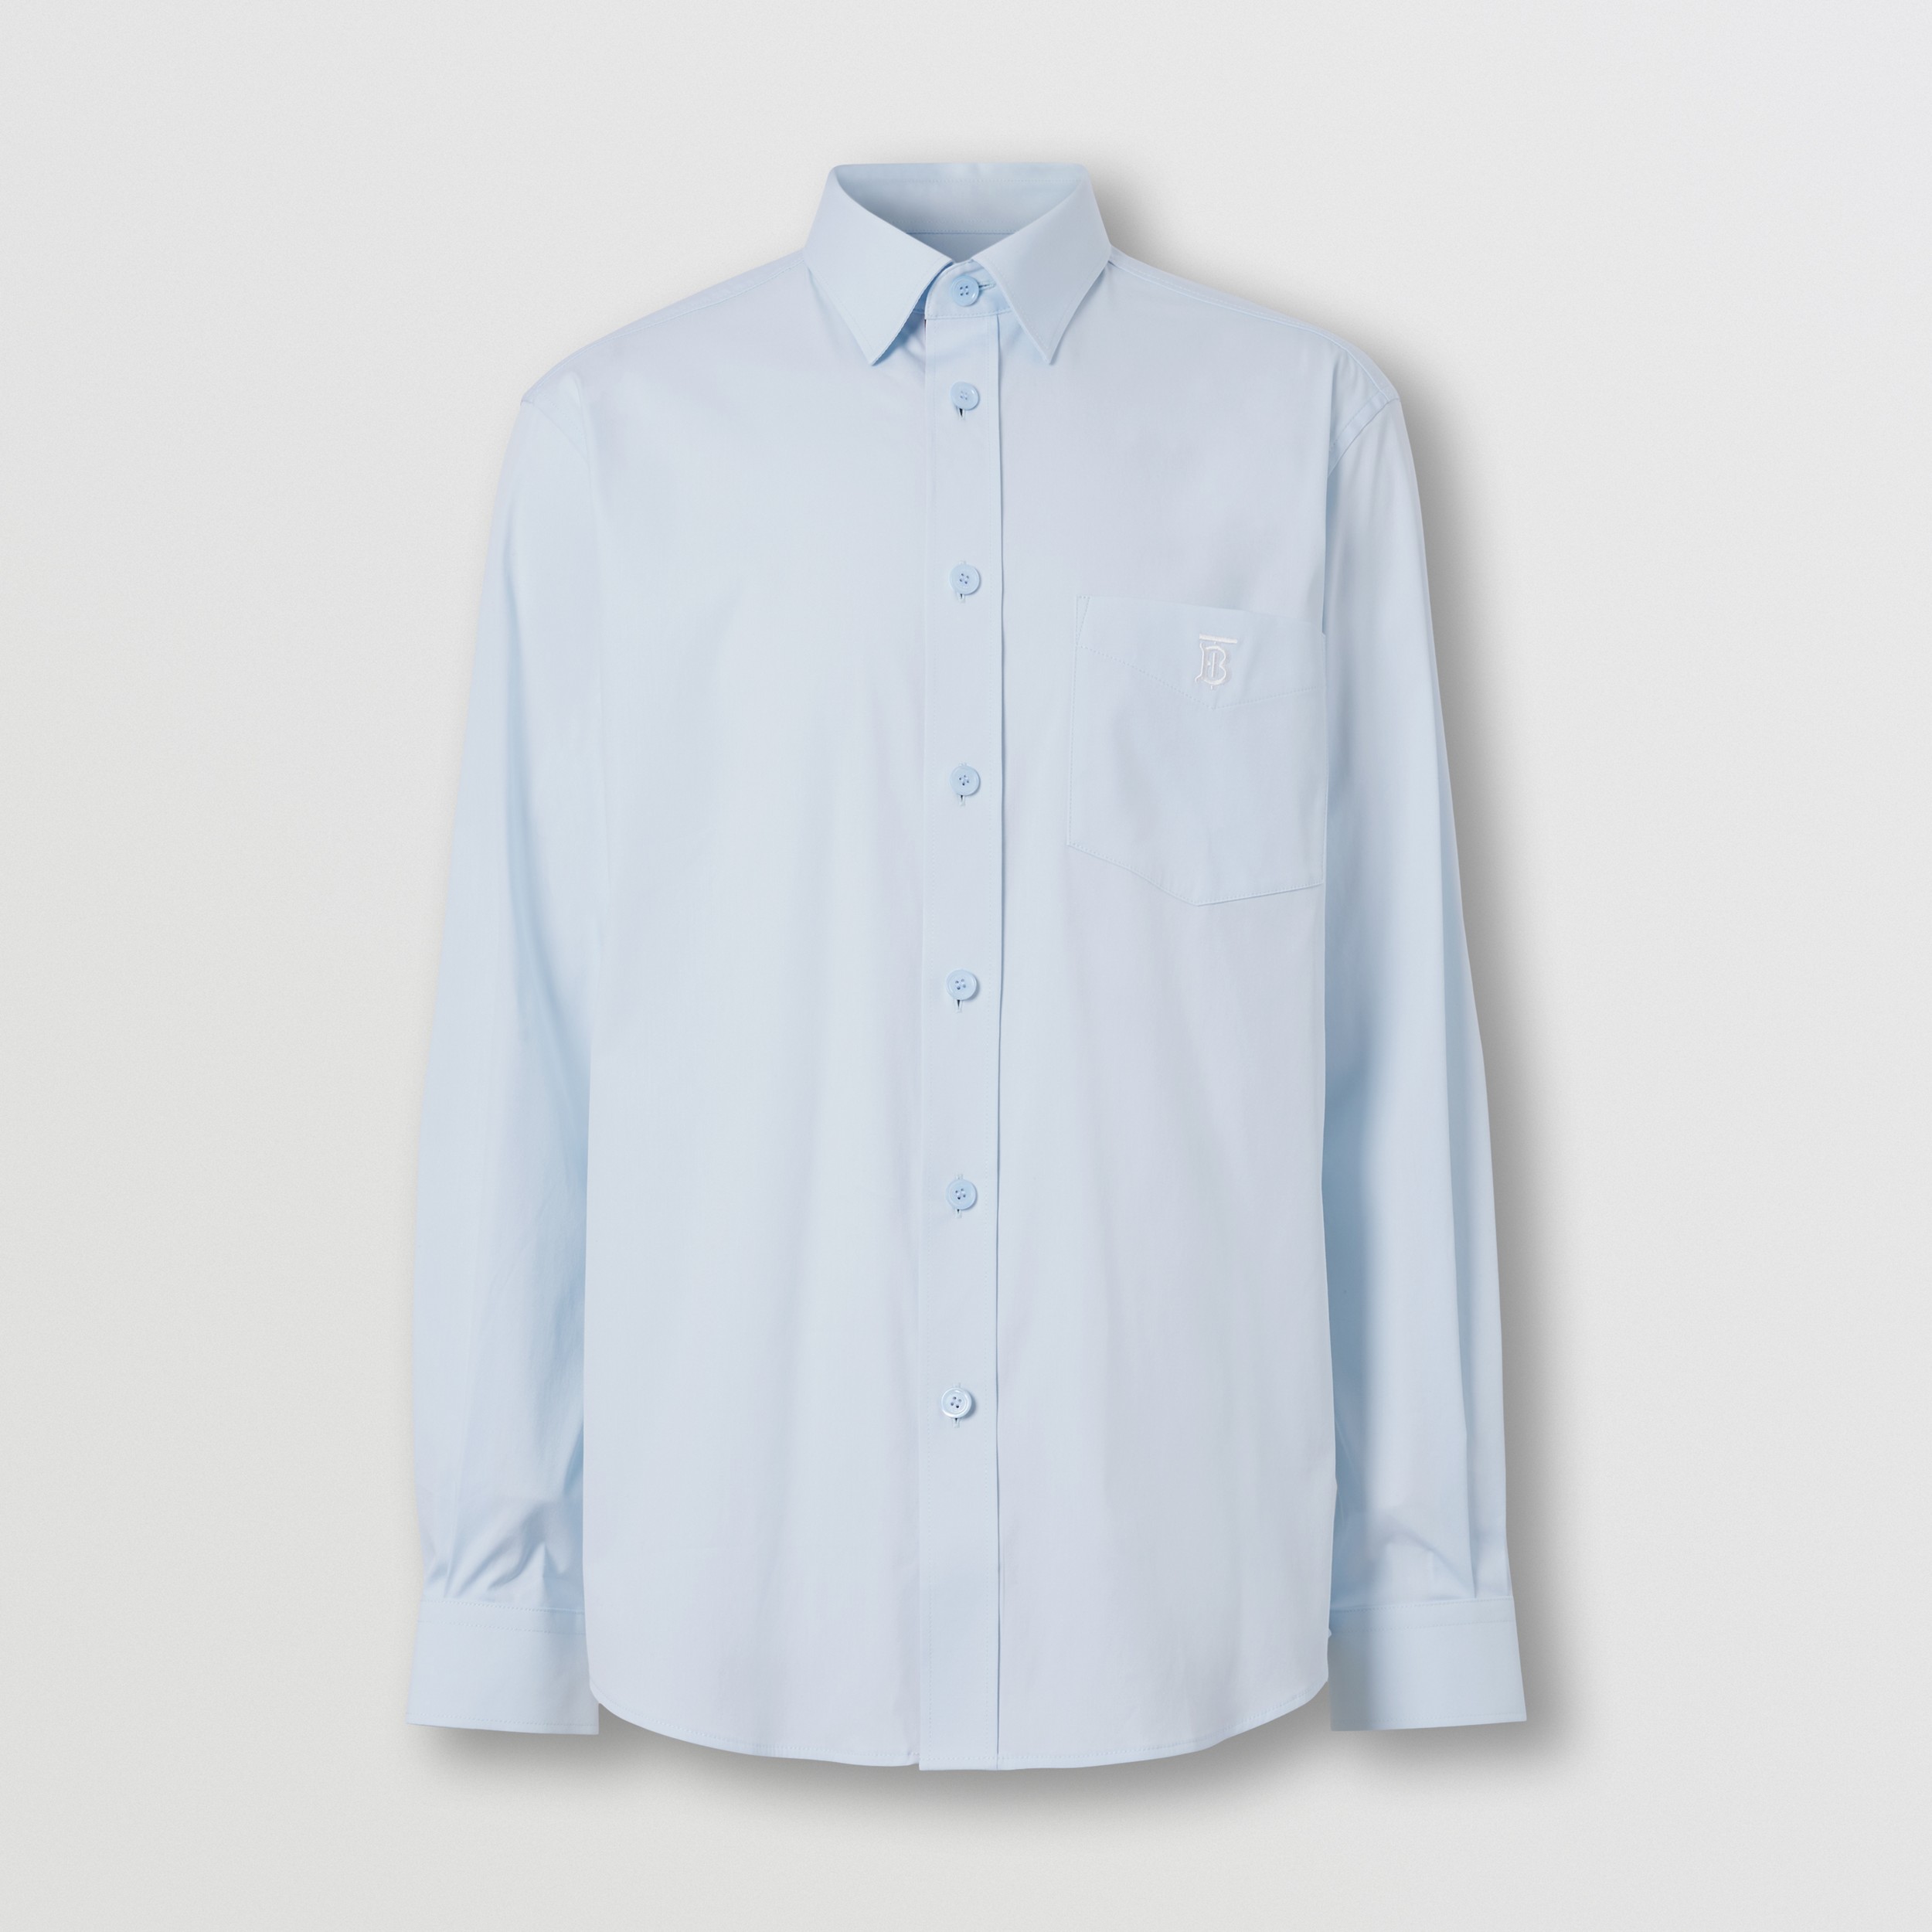 Chemise TB Monogram en coton melange Coton Burberry pour homme en coloris Bleu Homme Vêtements Chemises Chemises casual et boutonnées 